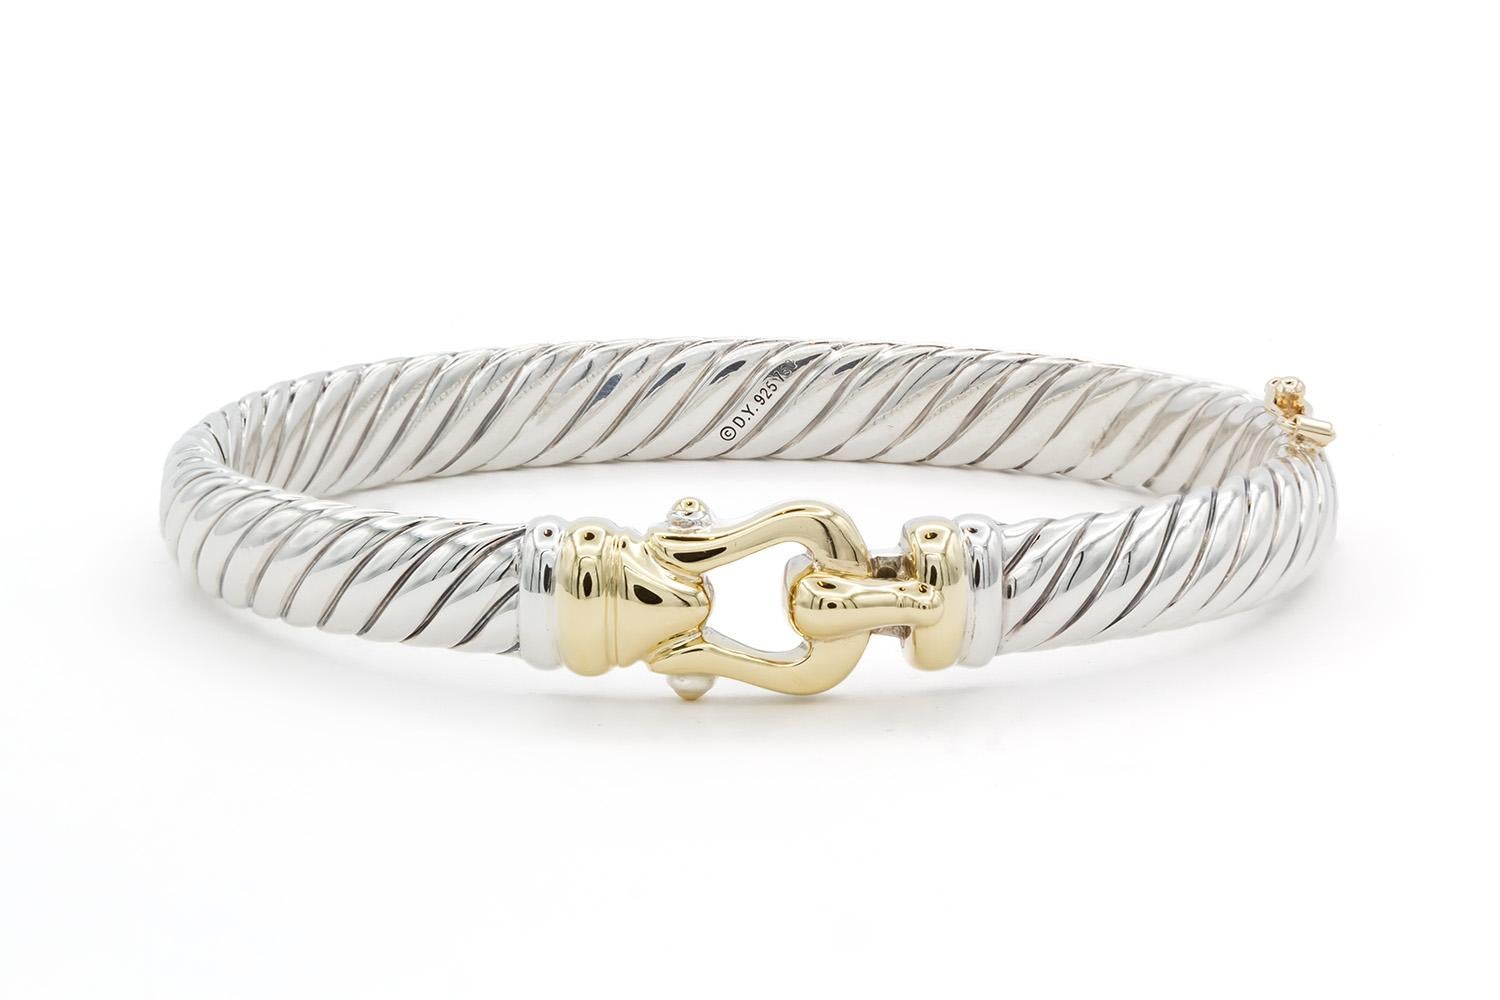 Wir freuen uns, dieses David Yurman Two Tone Hinged Buckle Bracelet Bangle anbieten zu können. Dieses Armband zeigt David Yurmans klassisches Kabeldesign und ist aus Sterlingsilber und 18k Gelbgold gefertigt. Das Armband ist 7 mm breit und passt an